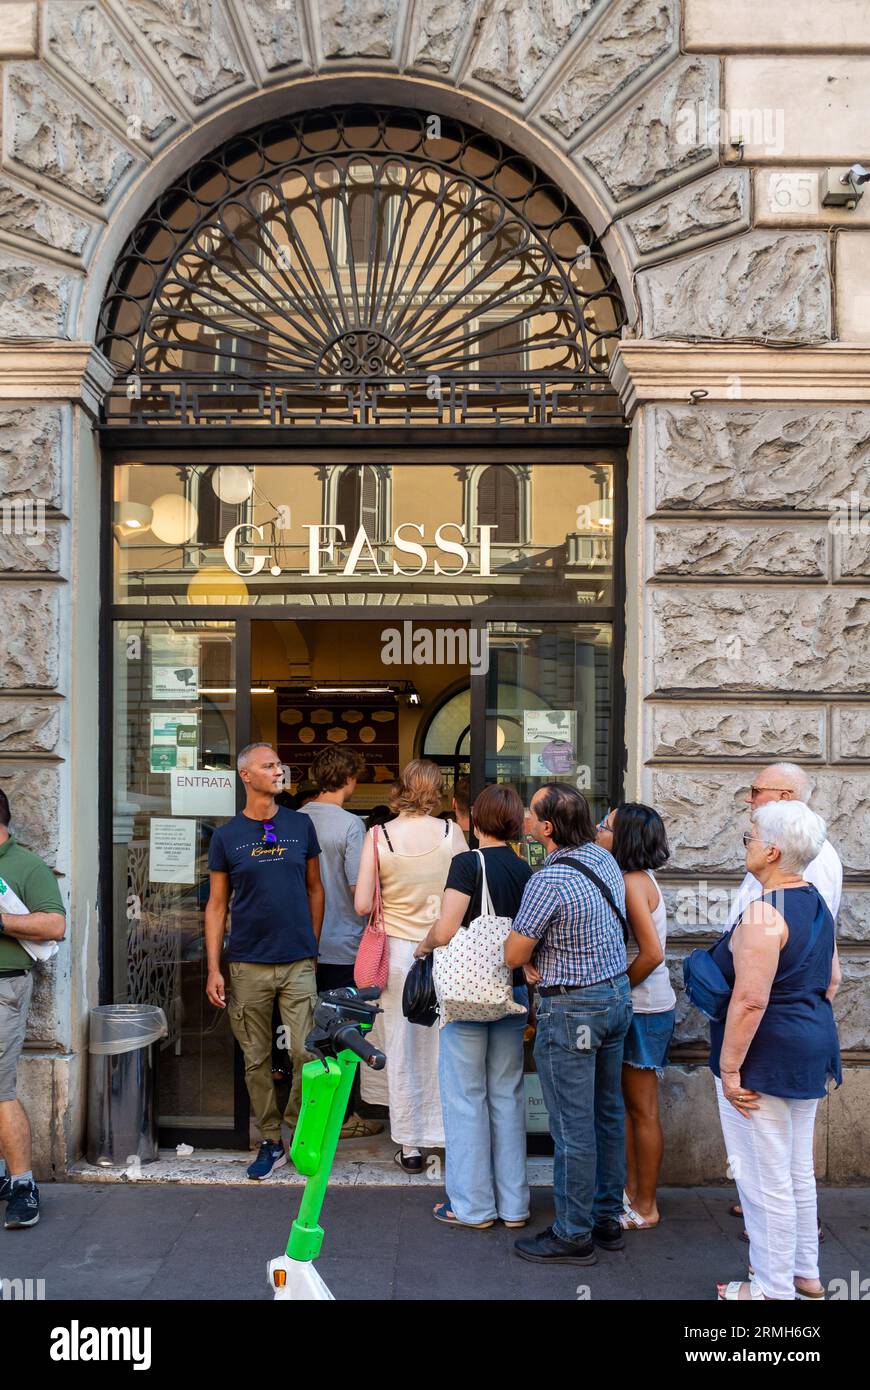 Rome, Latium, Italie, les gens attendent à Gelateria Fassi qui est un célèbre magasin de gelato à Rome. Banque D'Images